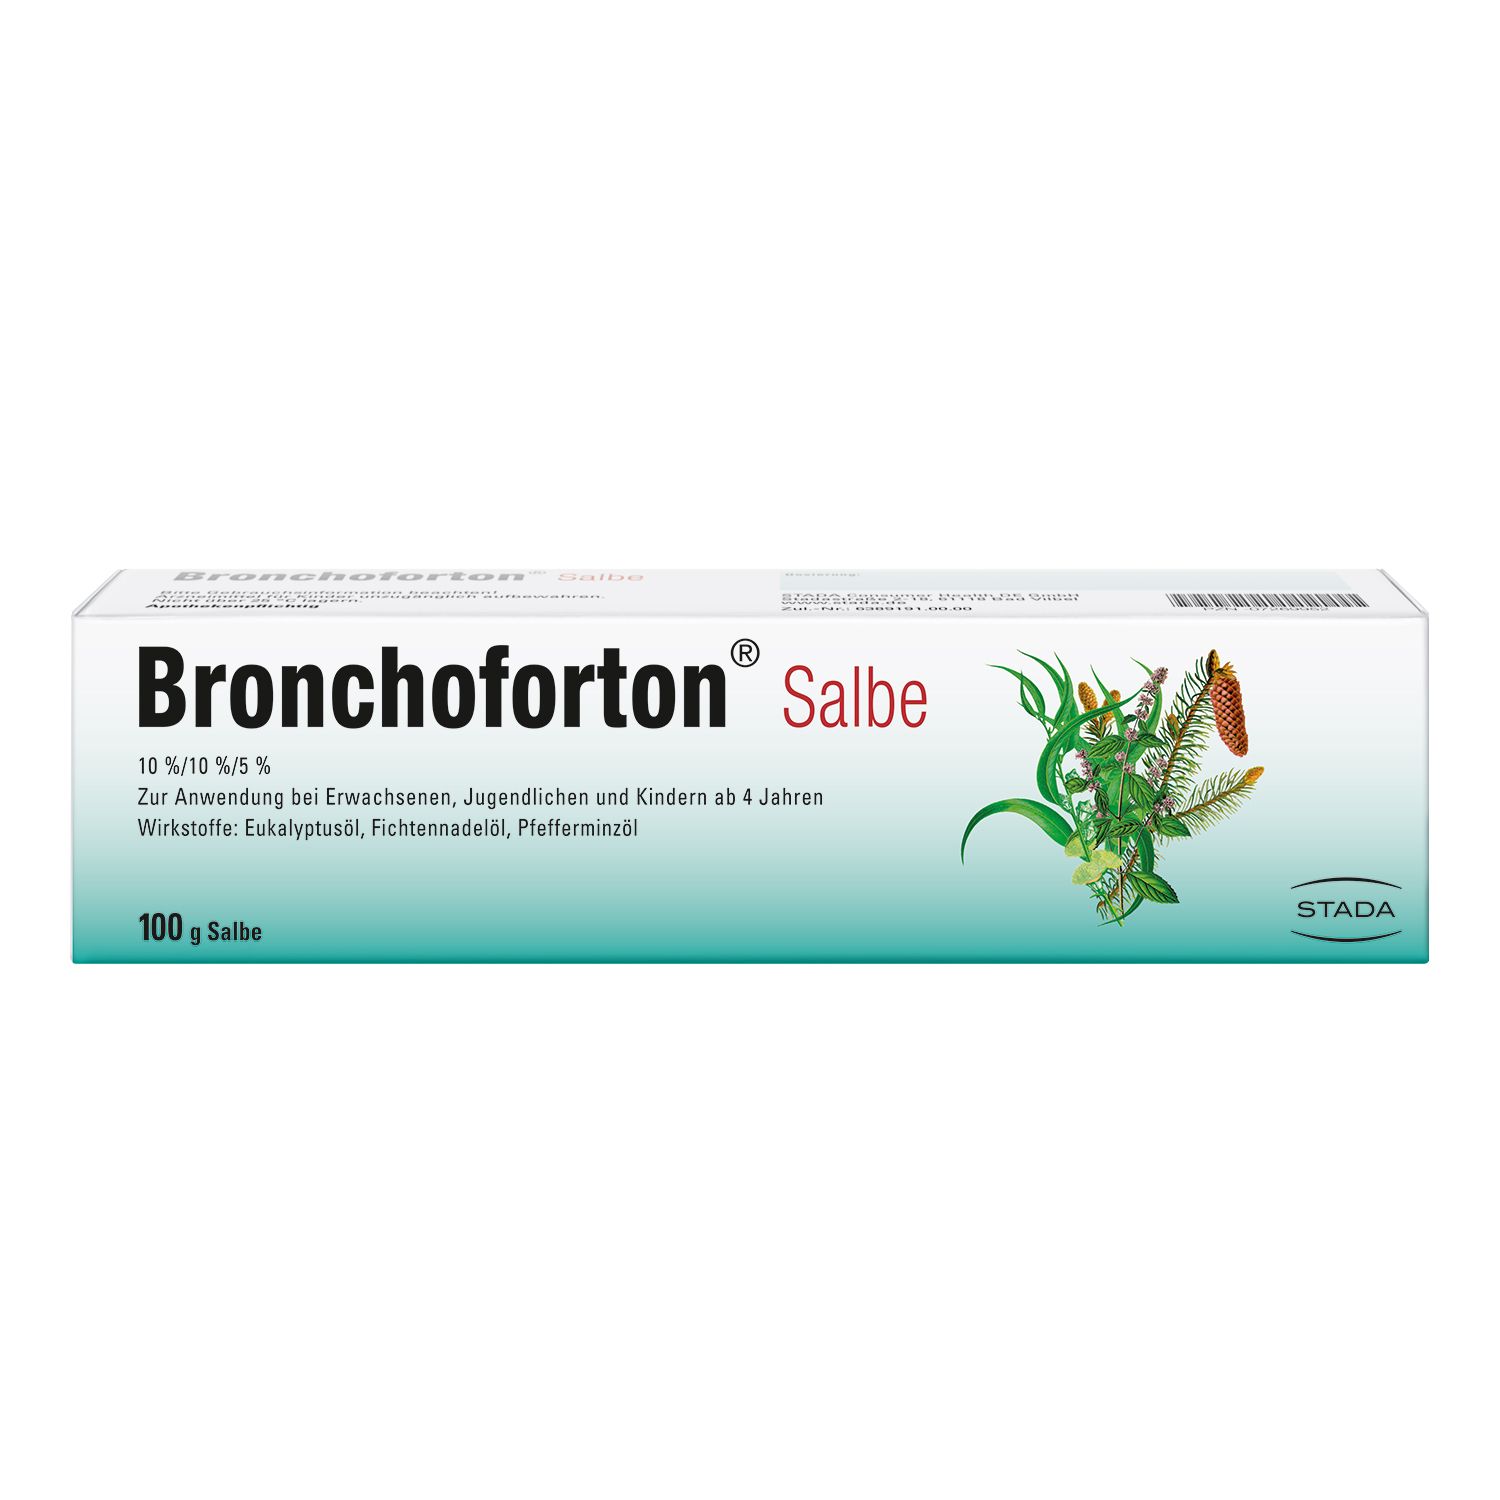 Bronchoforton® Salbe – Erkältungssalbe mit rein pflanzlichen Wirkstoffen. Löst zähen Schleim, erleichtert das Abhusten; mit Eukalyptus-, Fichtennadel- und Pfefferminzöl